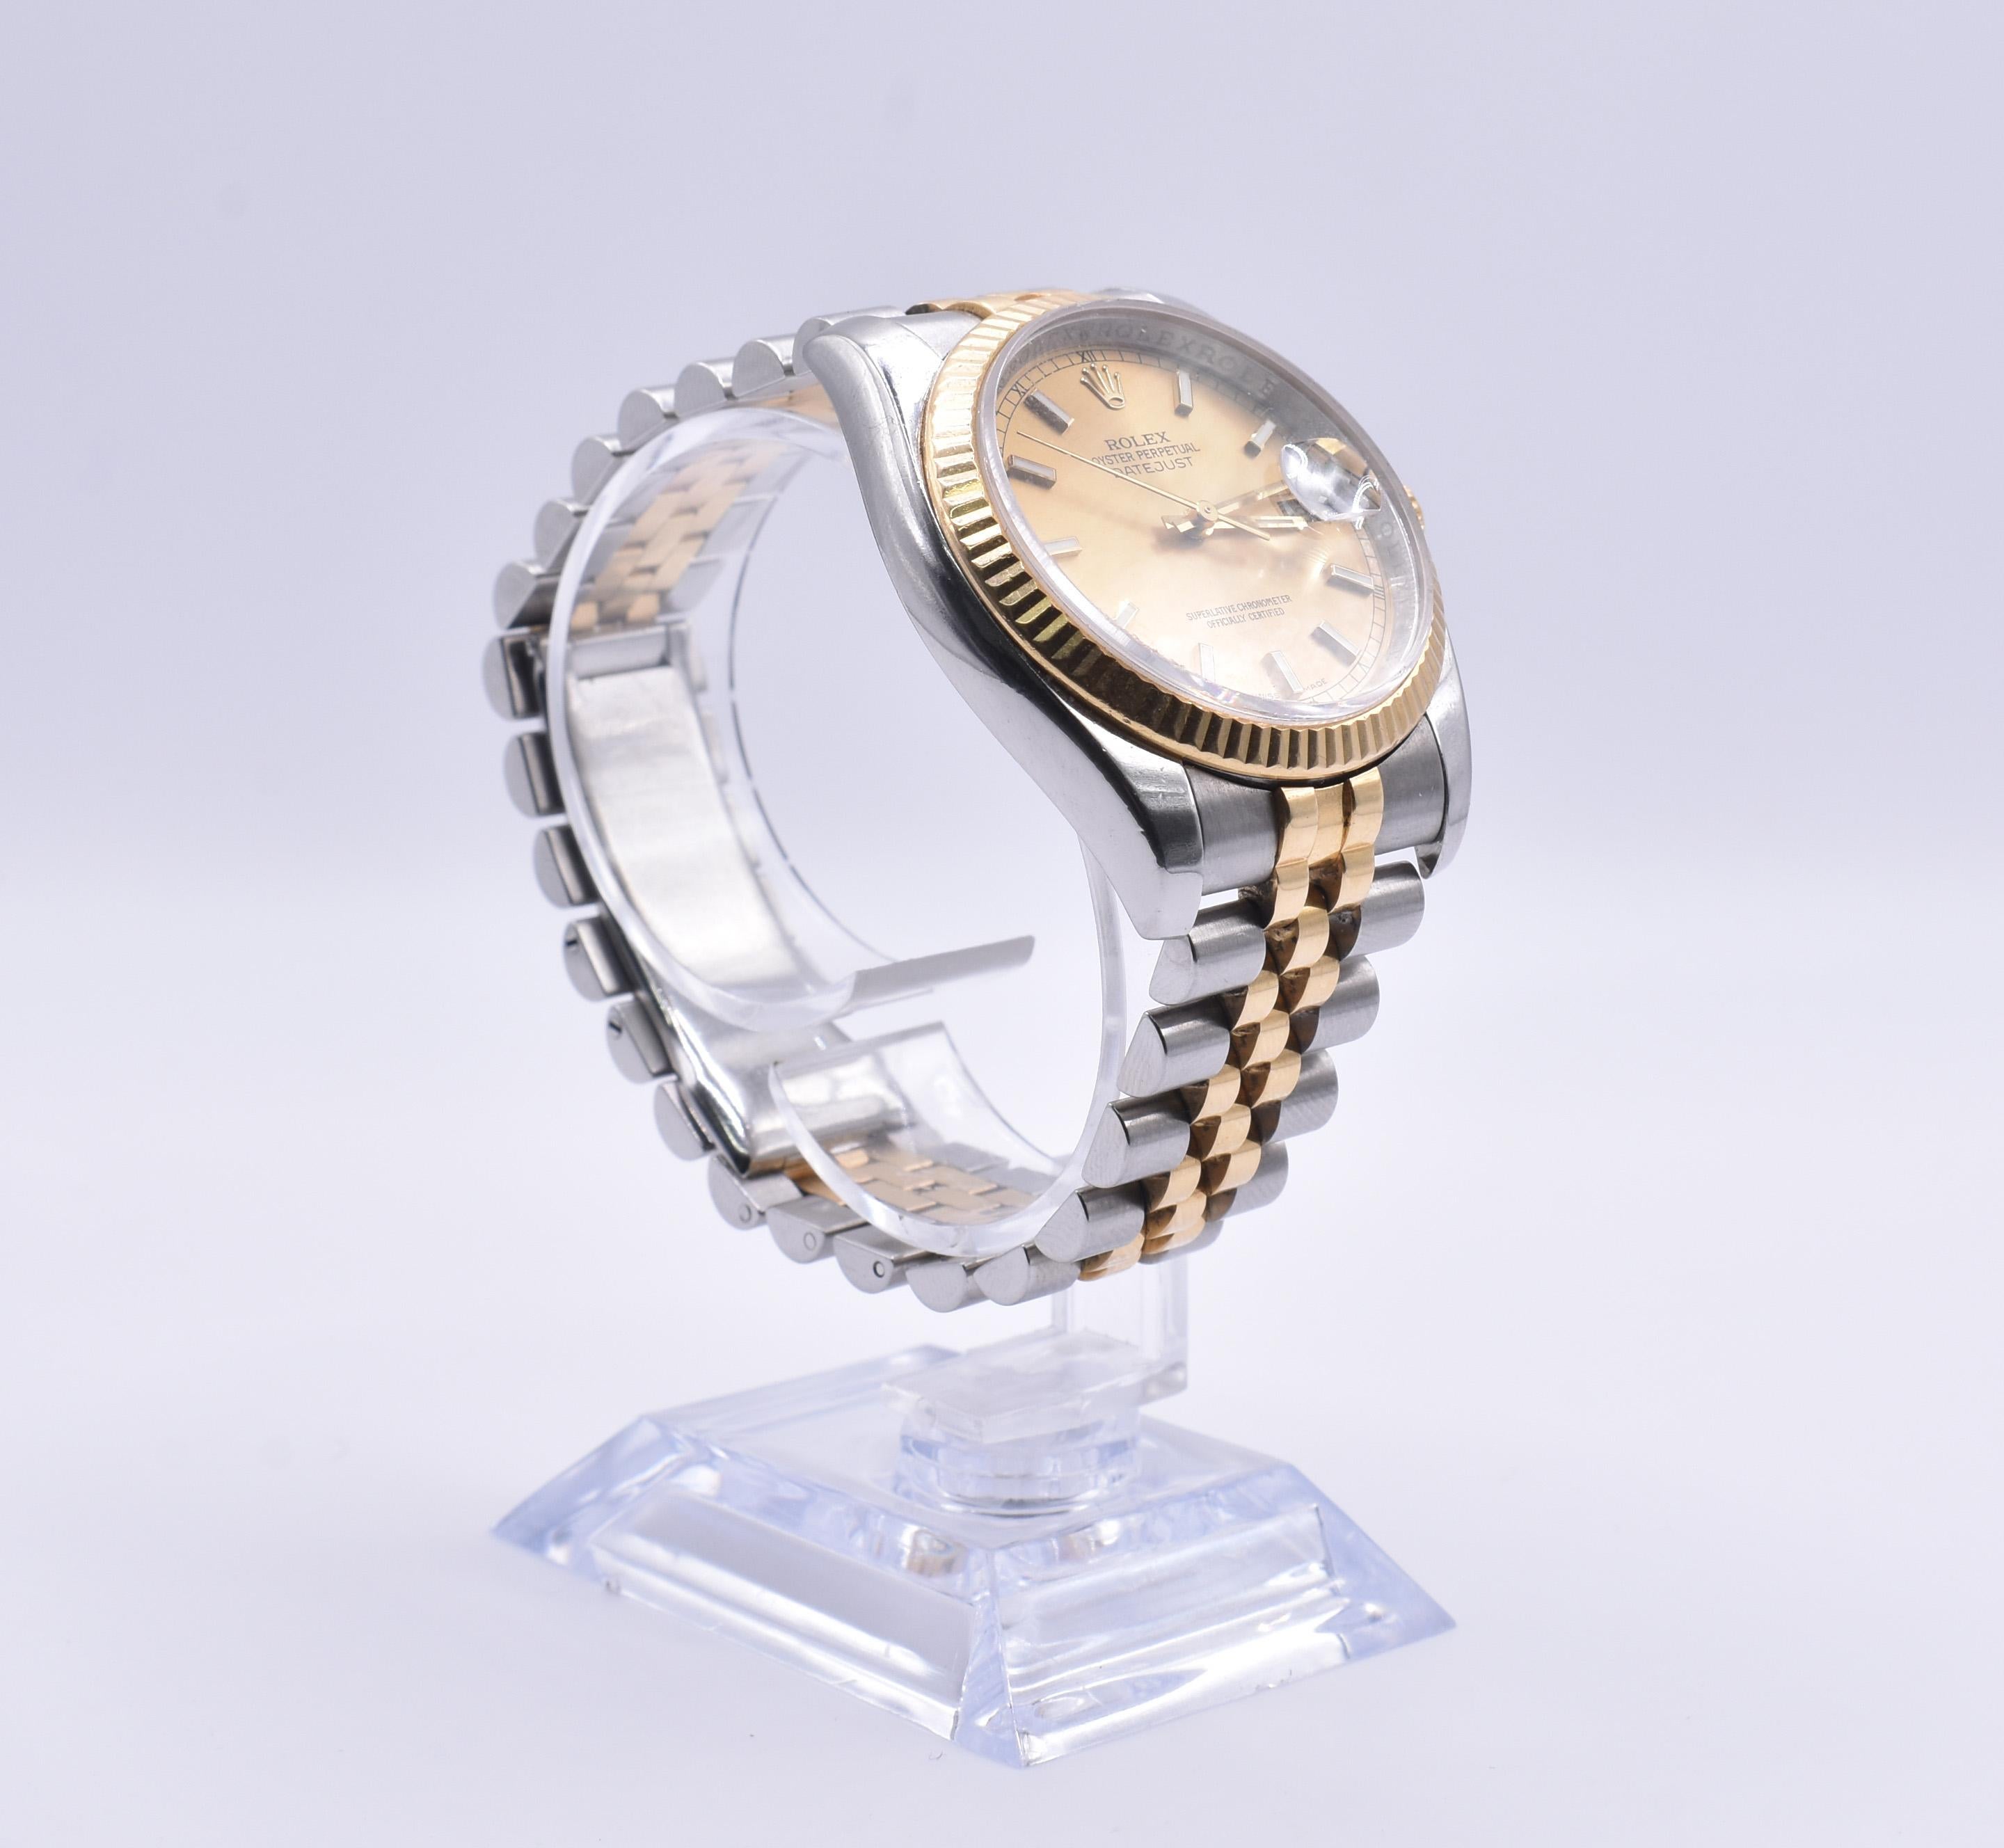 Offrez-vous le luxe avec cette montre Rolex Datejust 36mm 116233, fabriquée en Suisse avec une précision intemporelle. Le cadran de la montre ronde présente un motif de soleil champagne, complété par un bracelet Rolex Jubilee en acier et en or